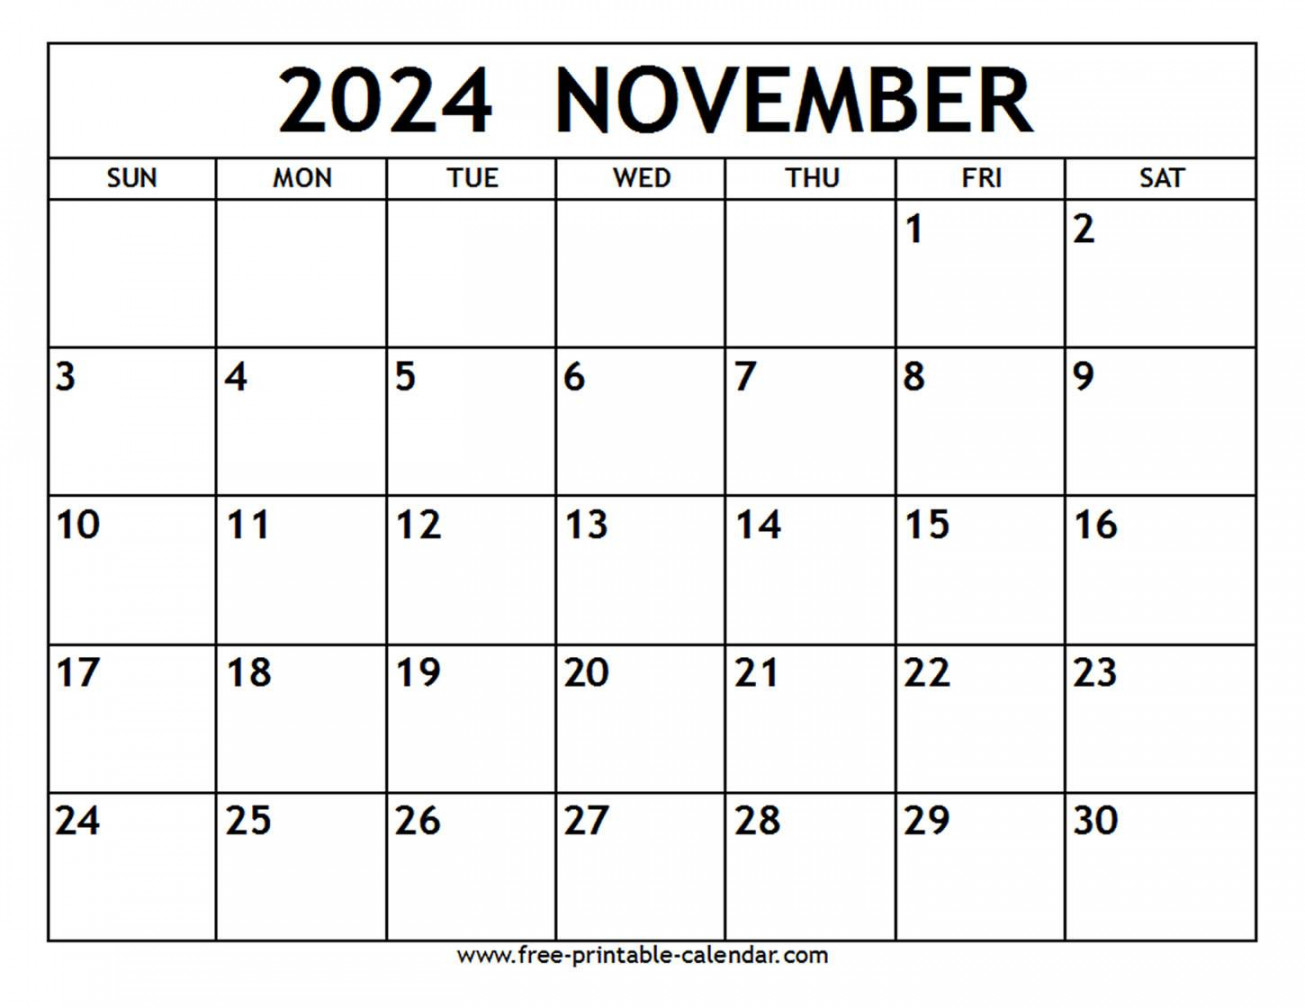 november calendar free printable calendar com